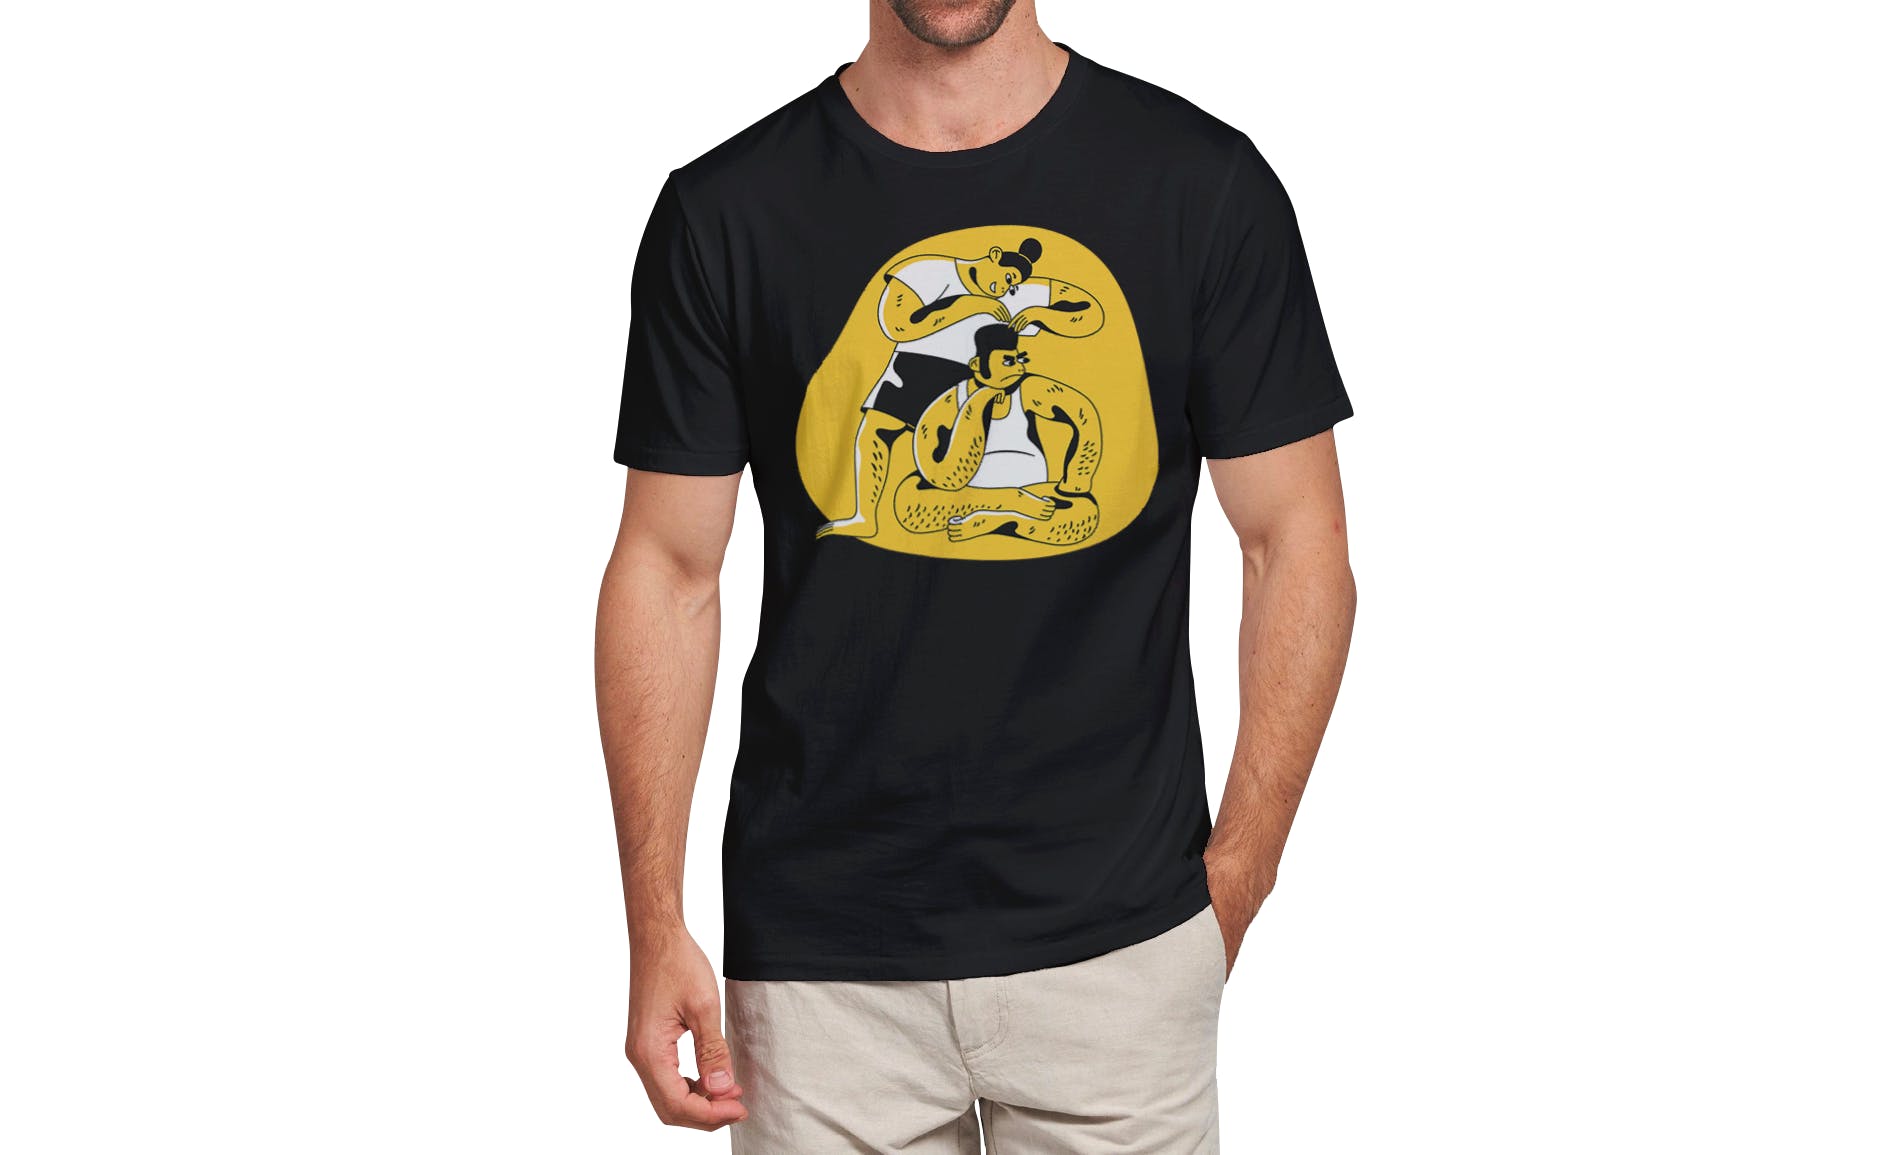 男士T恤印花设计效果图样机16设计网精选v03 T-shirt Mockup Vol 03插图(8)